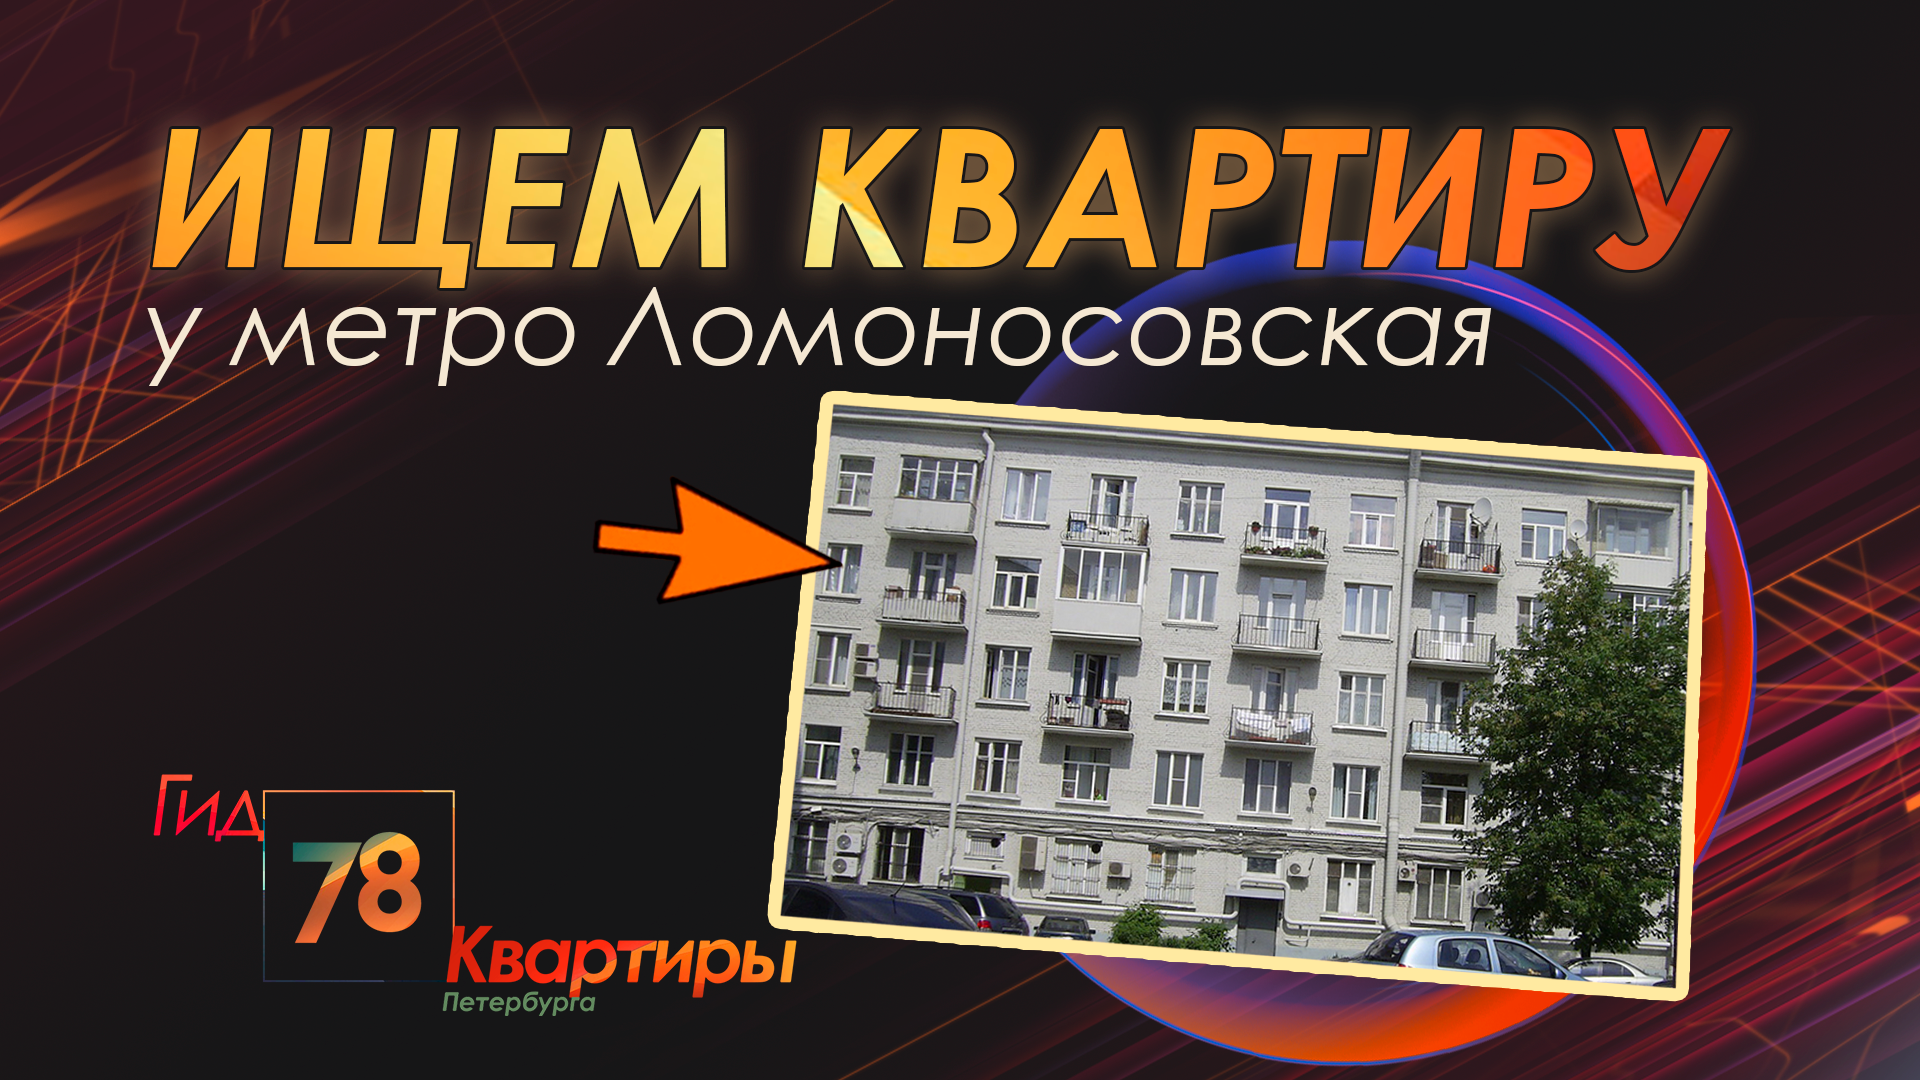 Ищем квартиру у метро «Ломоносовская»